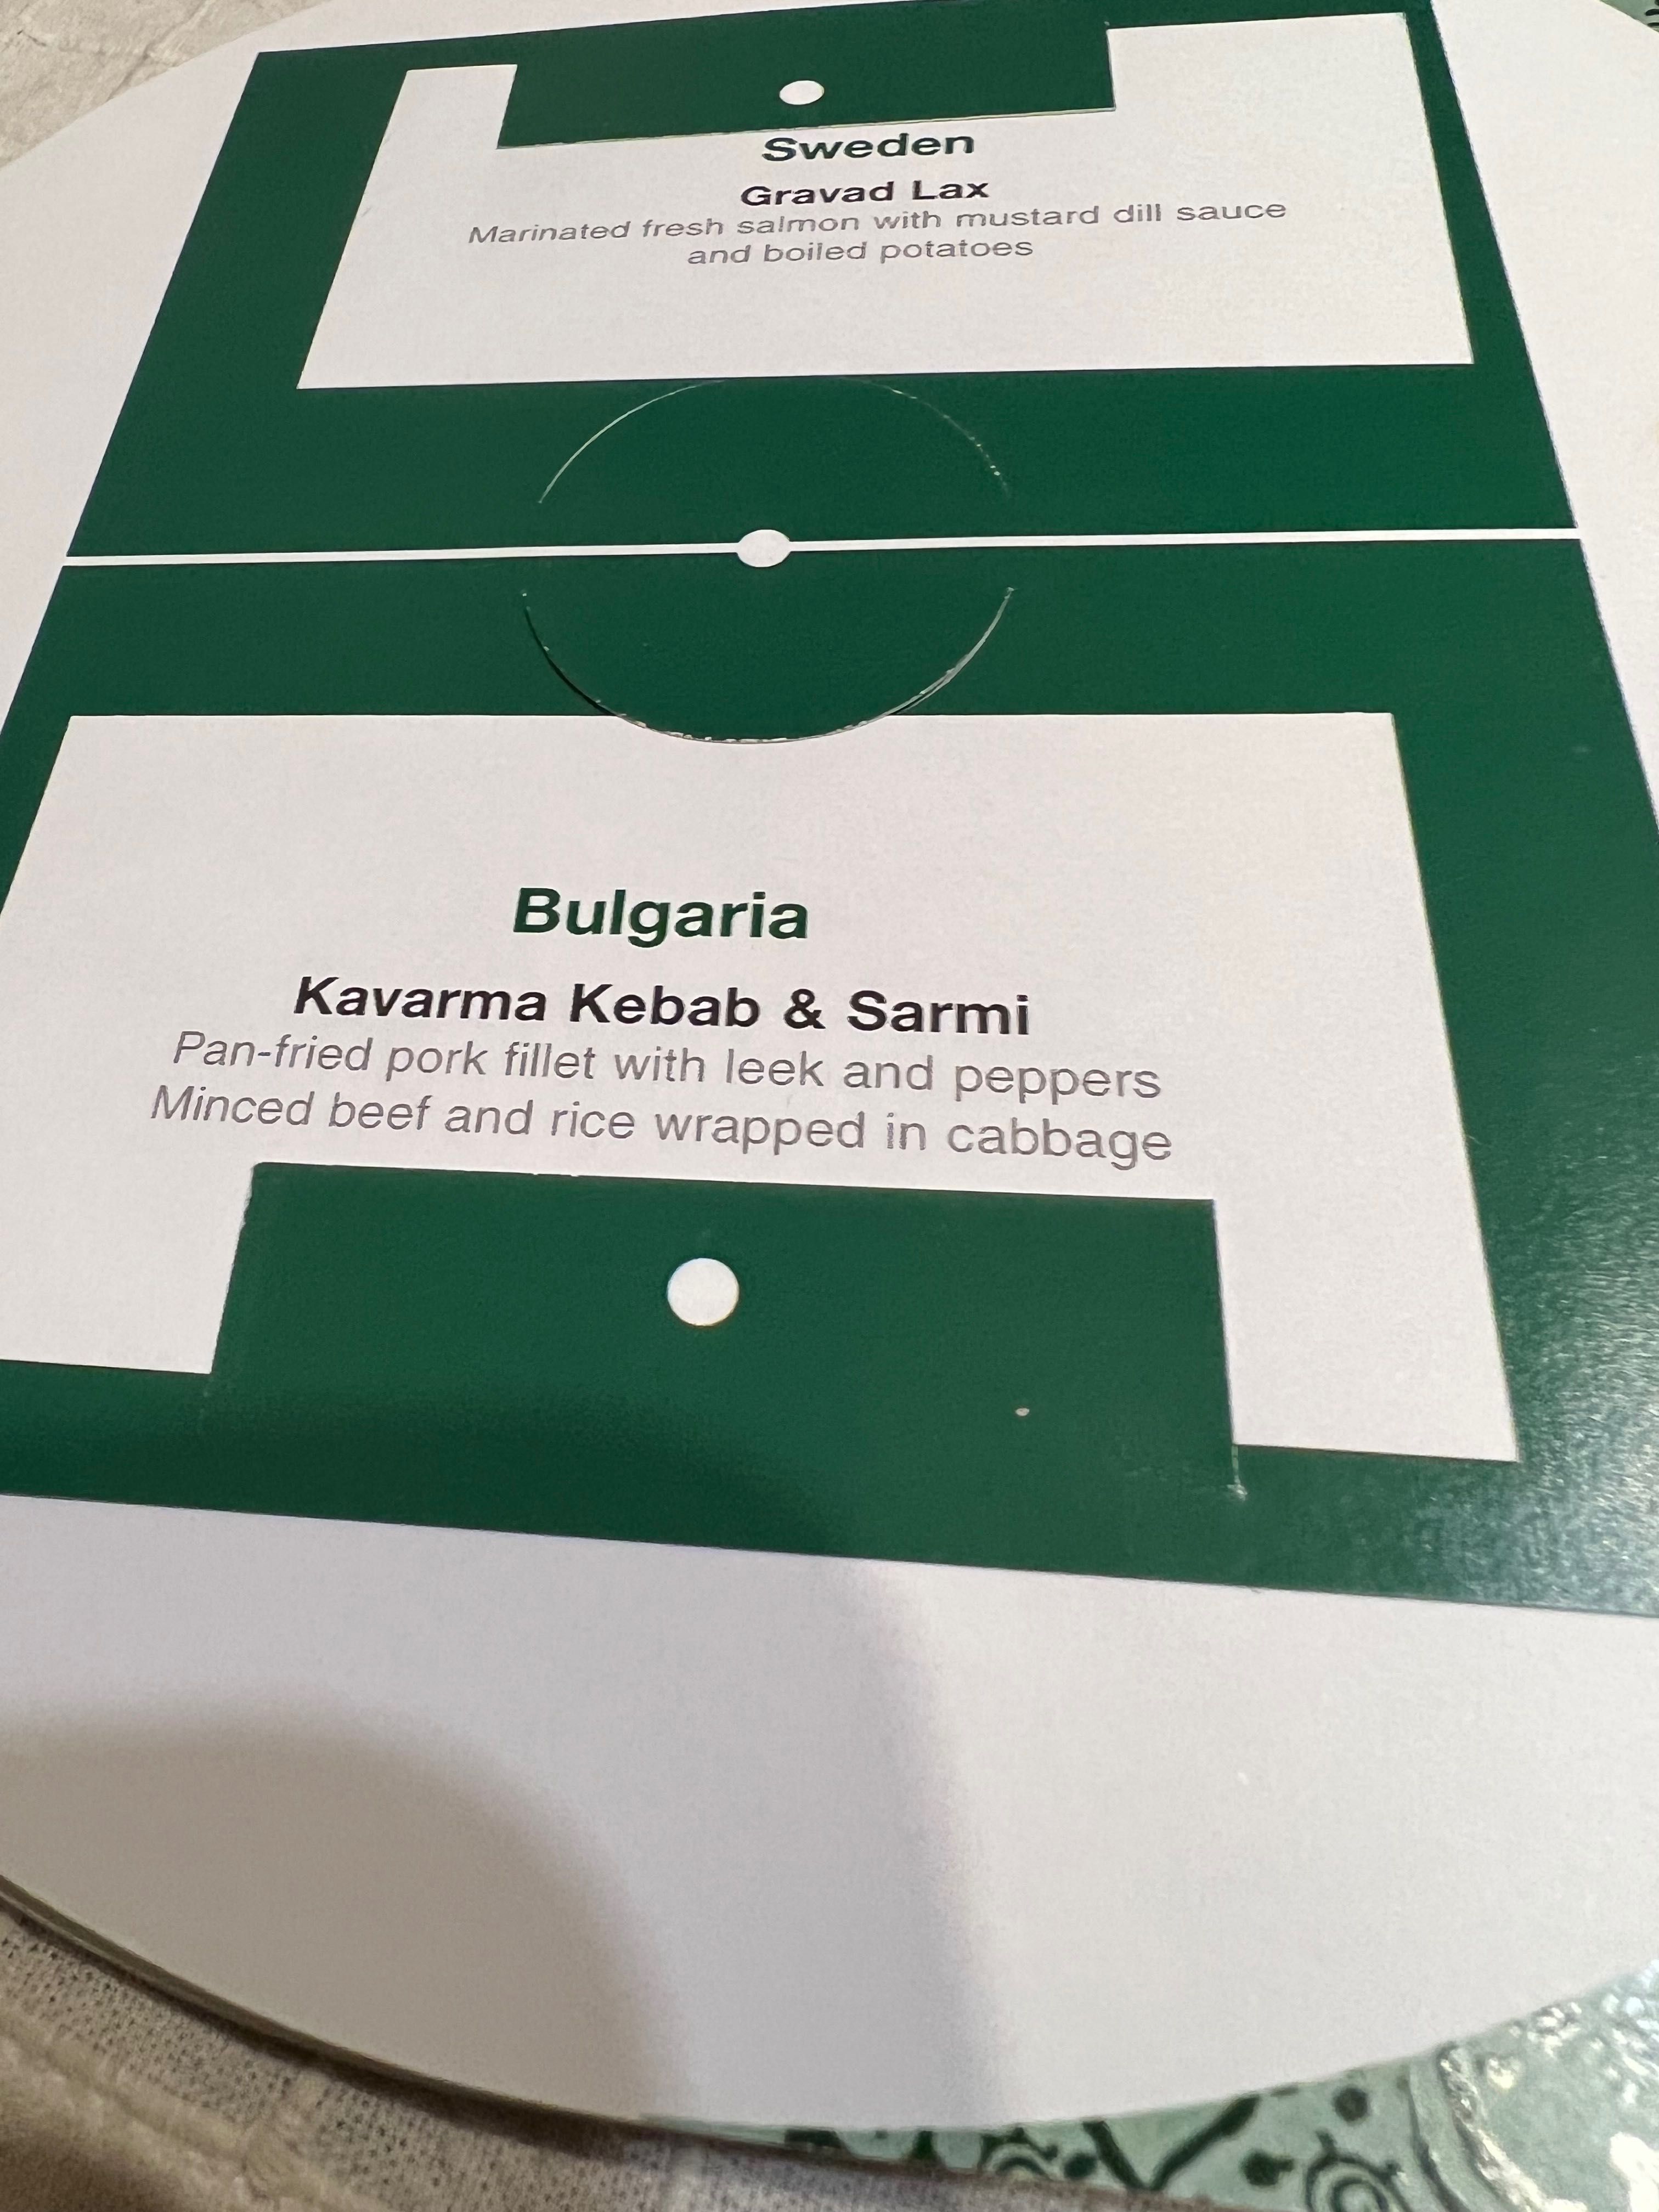 Футболно издание без аналог в България